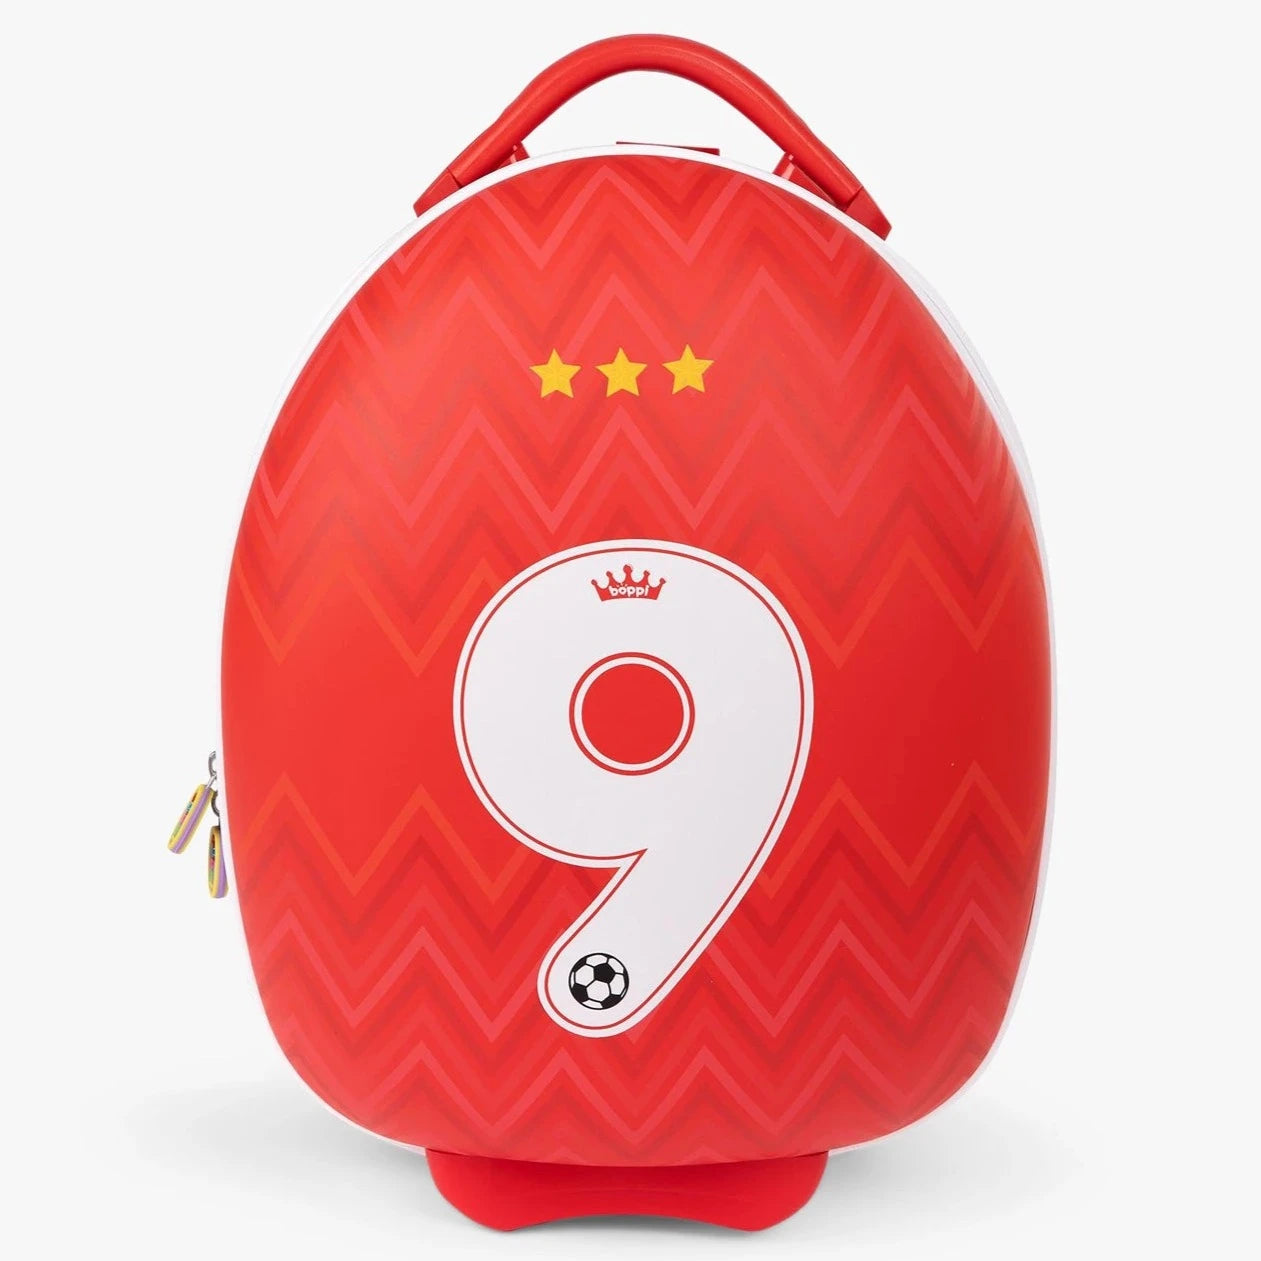 Boppi: Football suitcase 9 suitcase